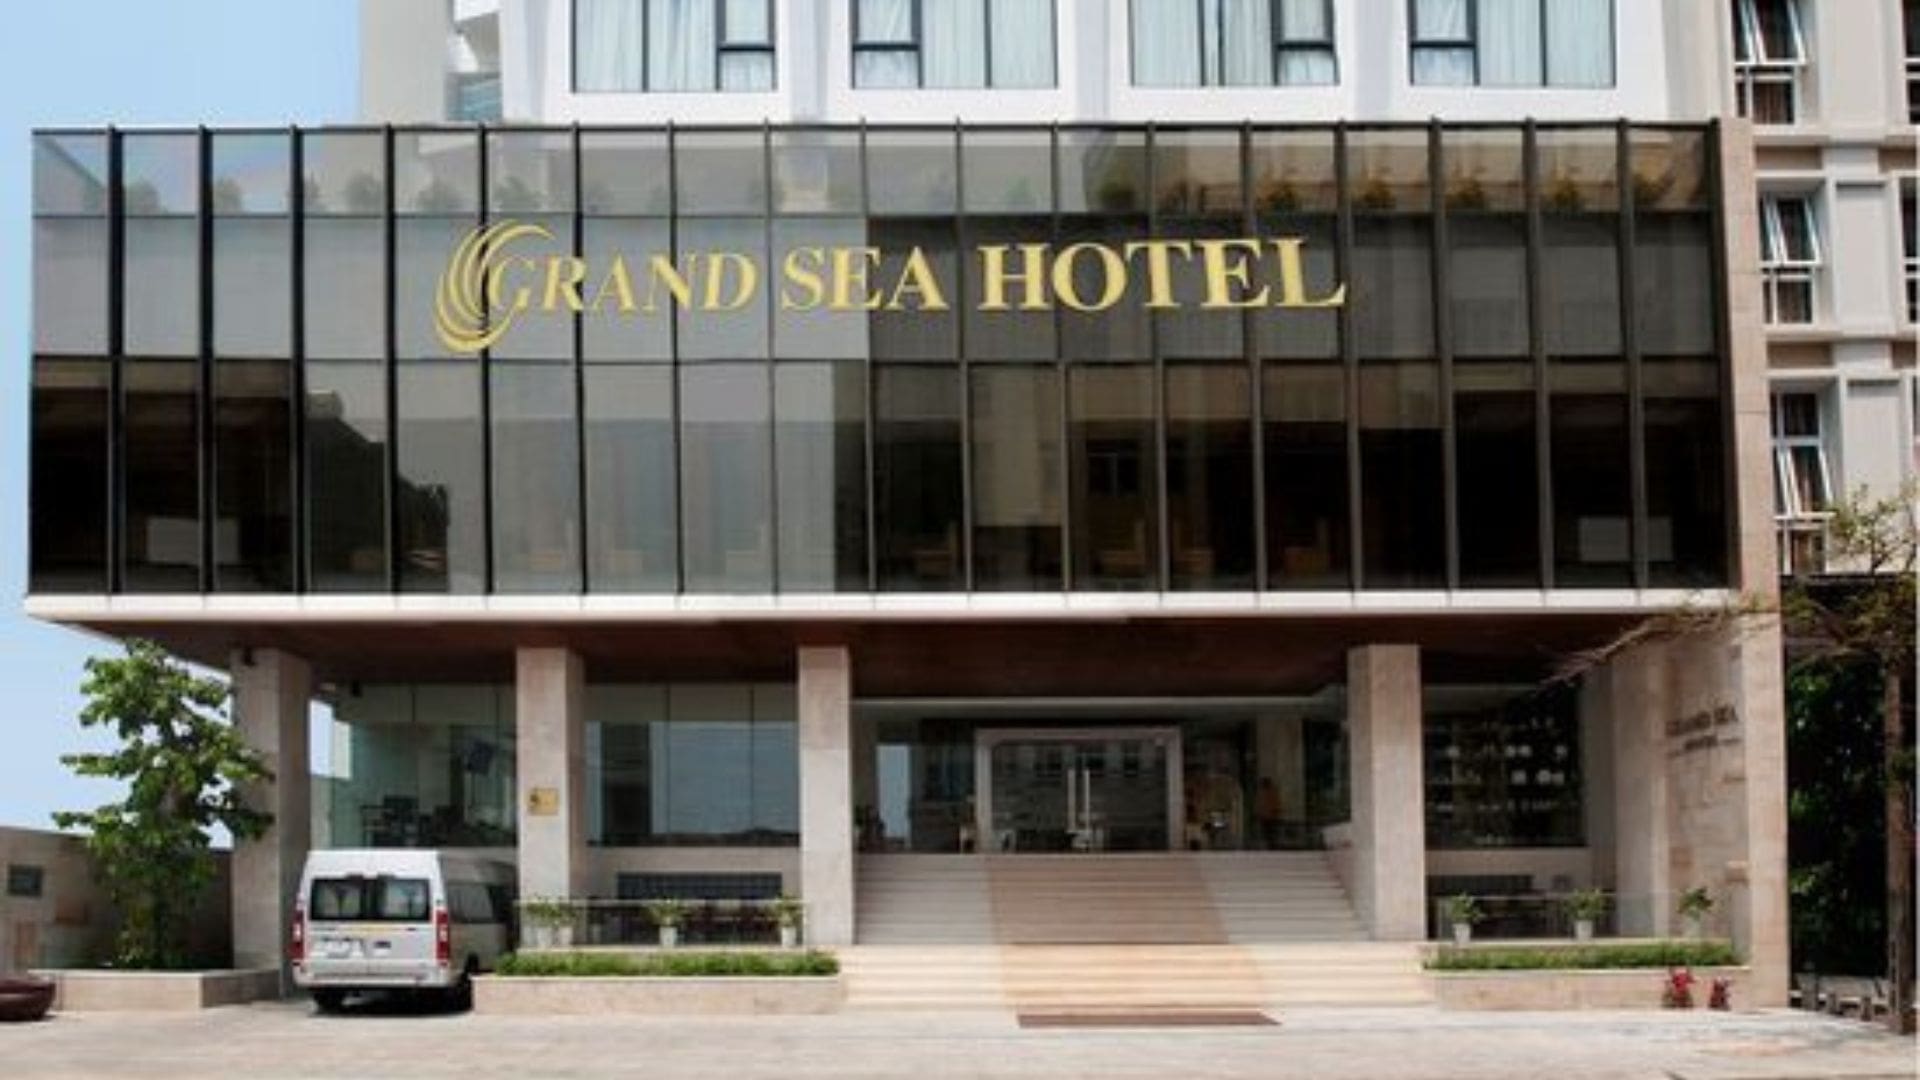 Grand Sea Hotel - Địa chỉ hotel Đà Nẵng gần biển giá rẻ